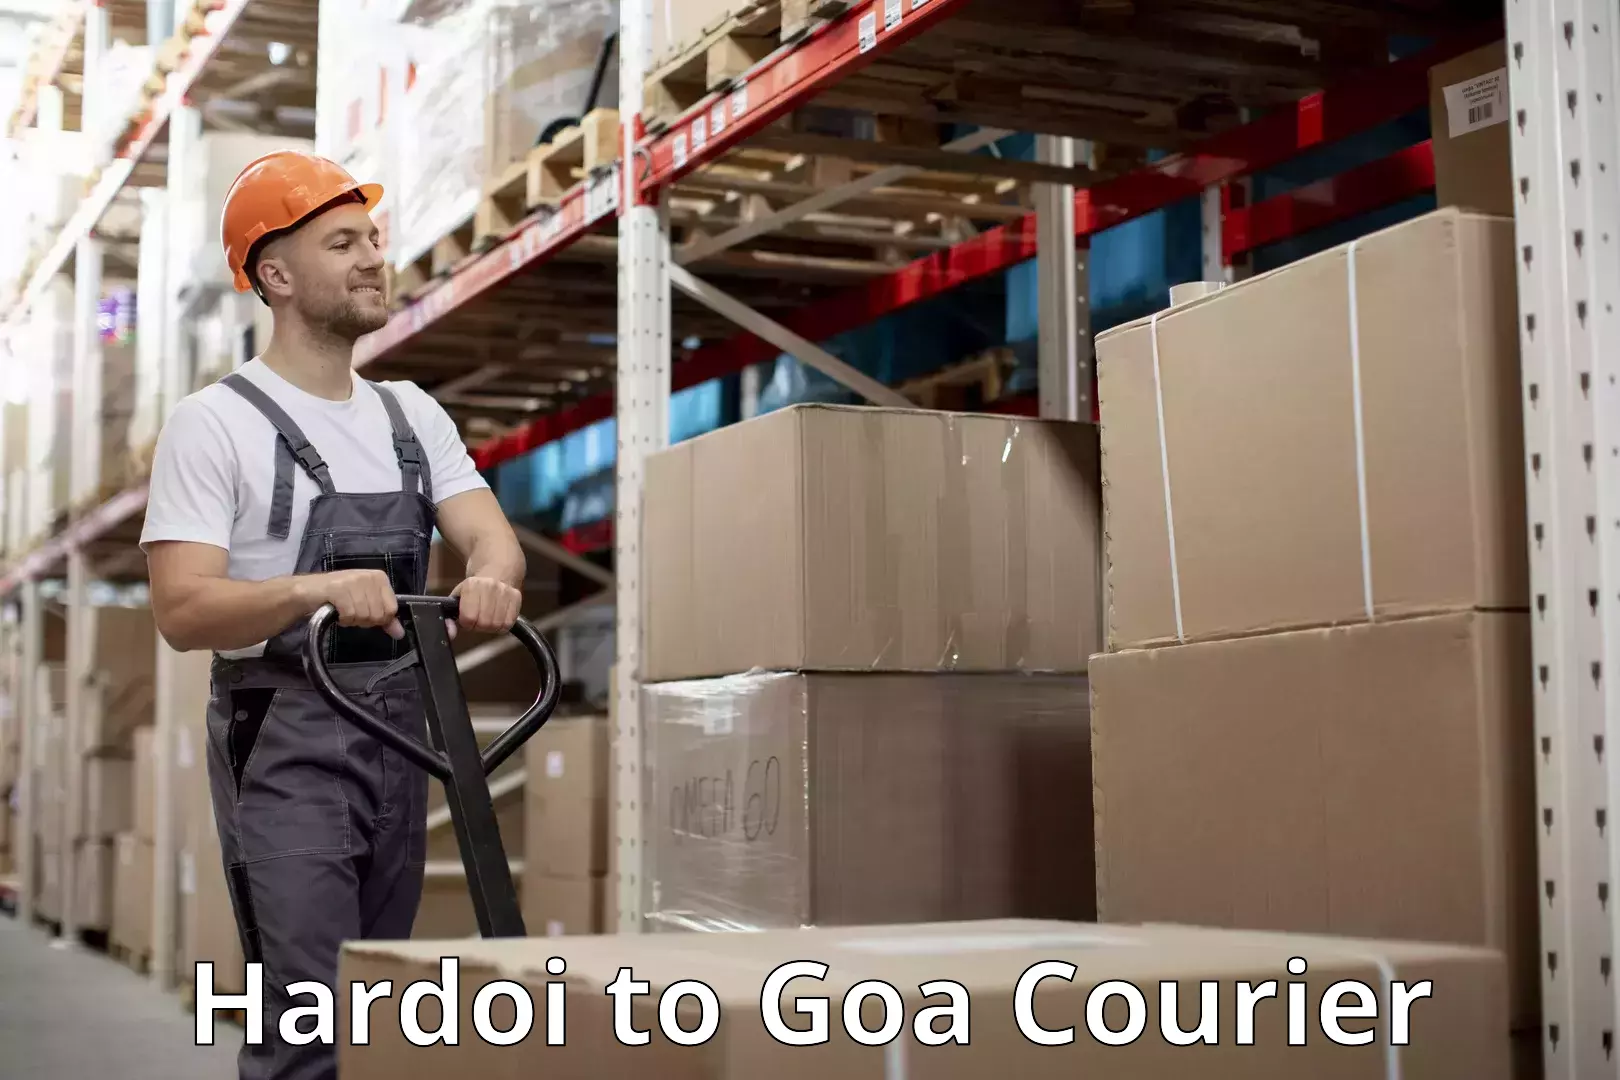 Luggage delivery app Hardoi to Goa